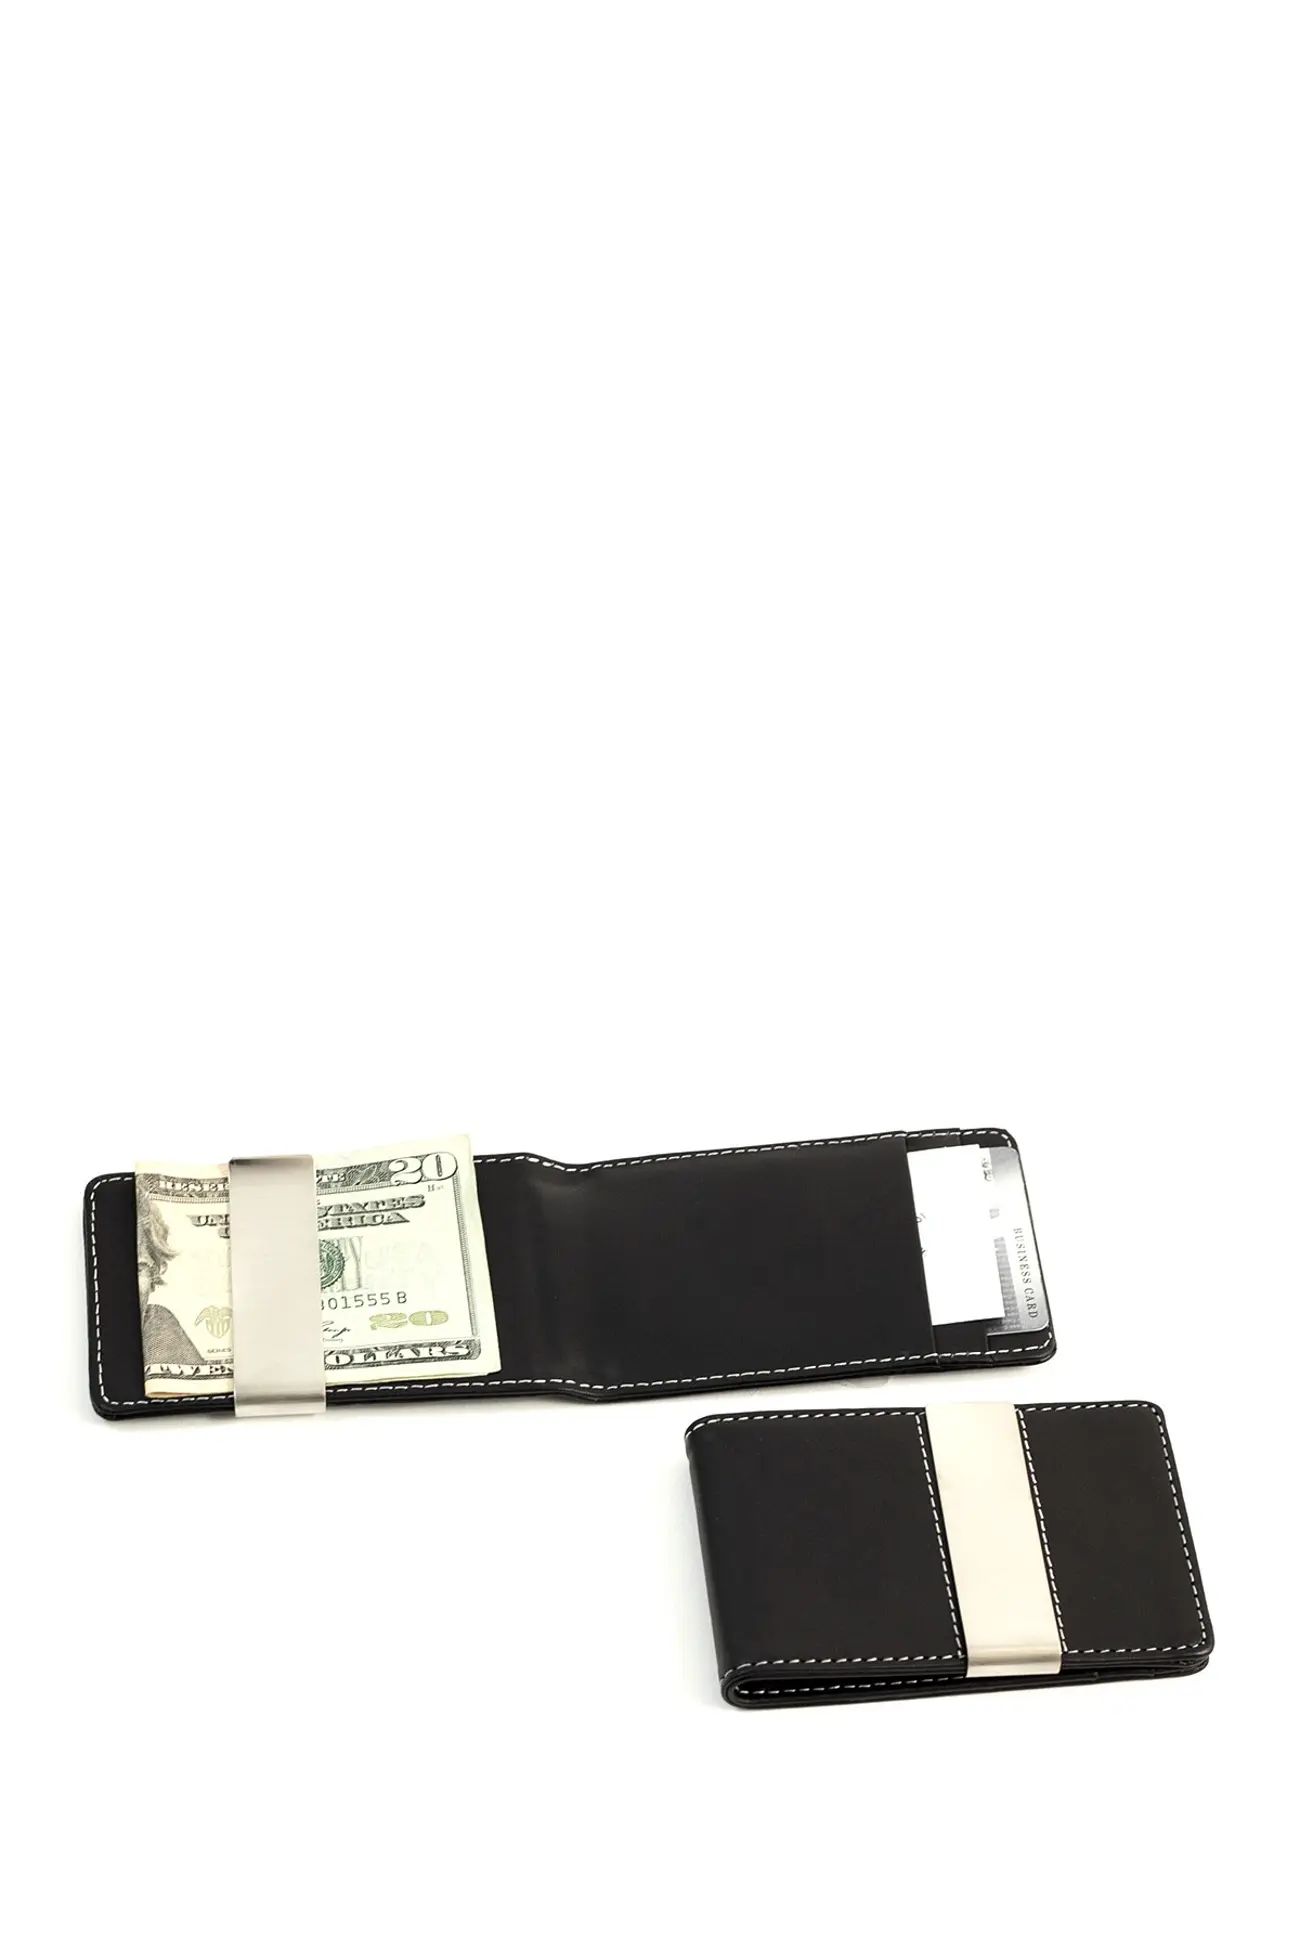 Bey-Berk | Black Leather Stainless Steel Money Clip Wallet | Nordstrom Rack | Nordstrom Rack